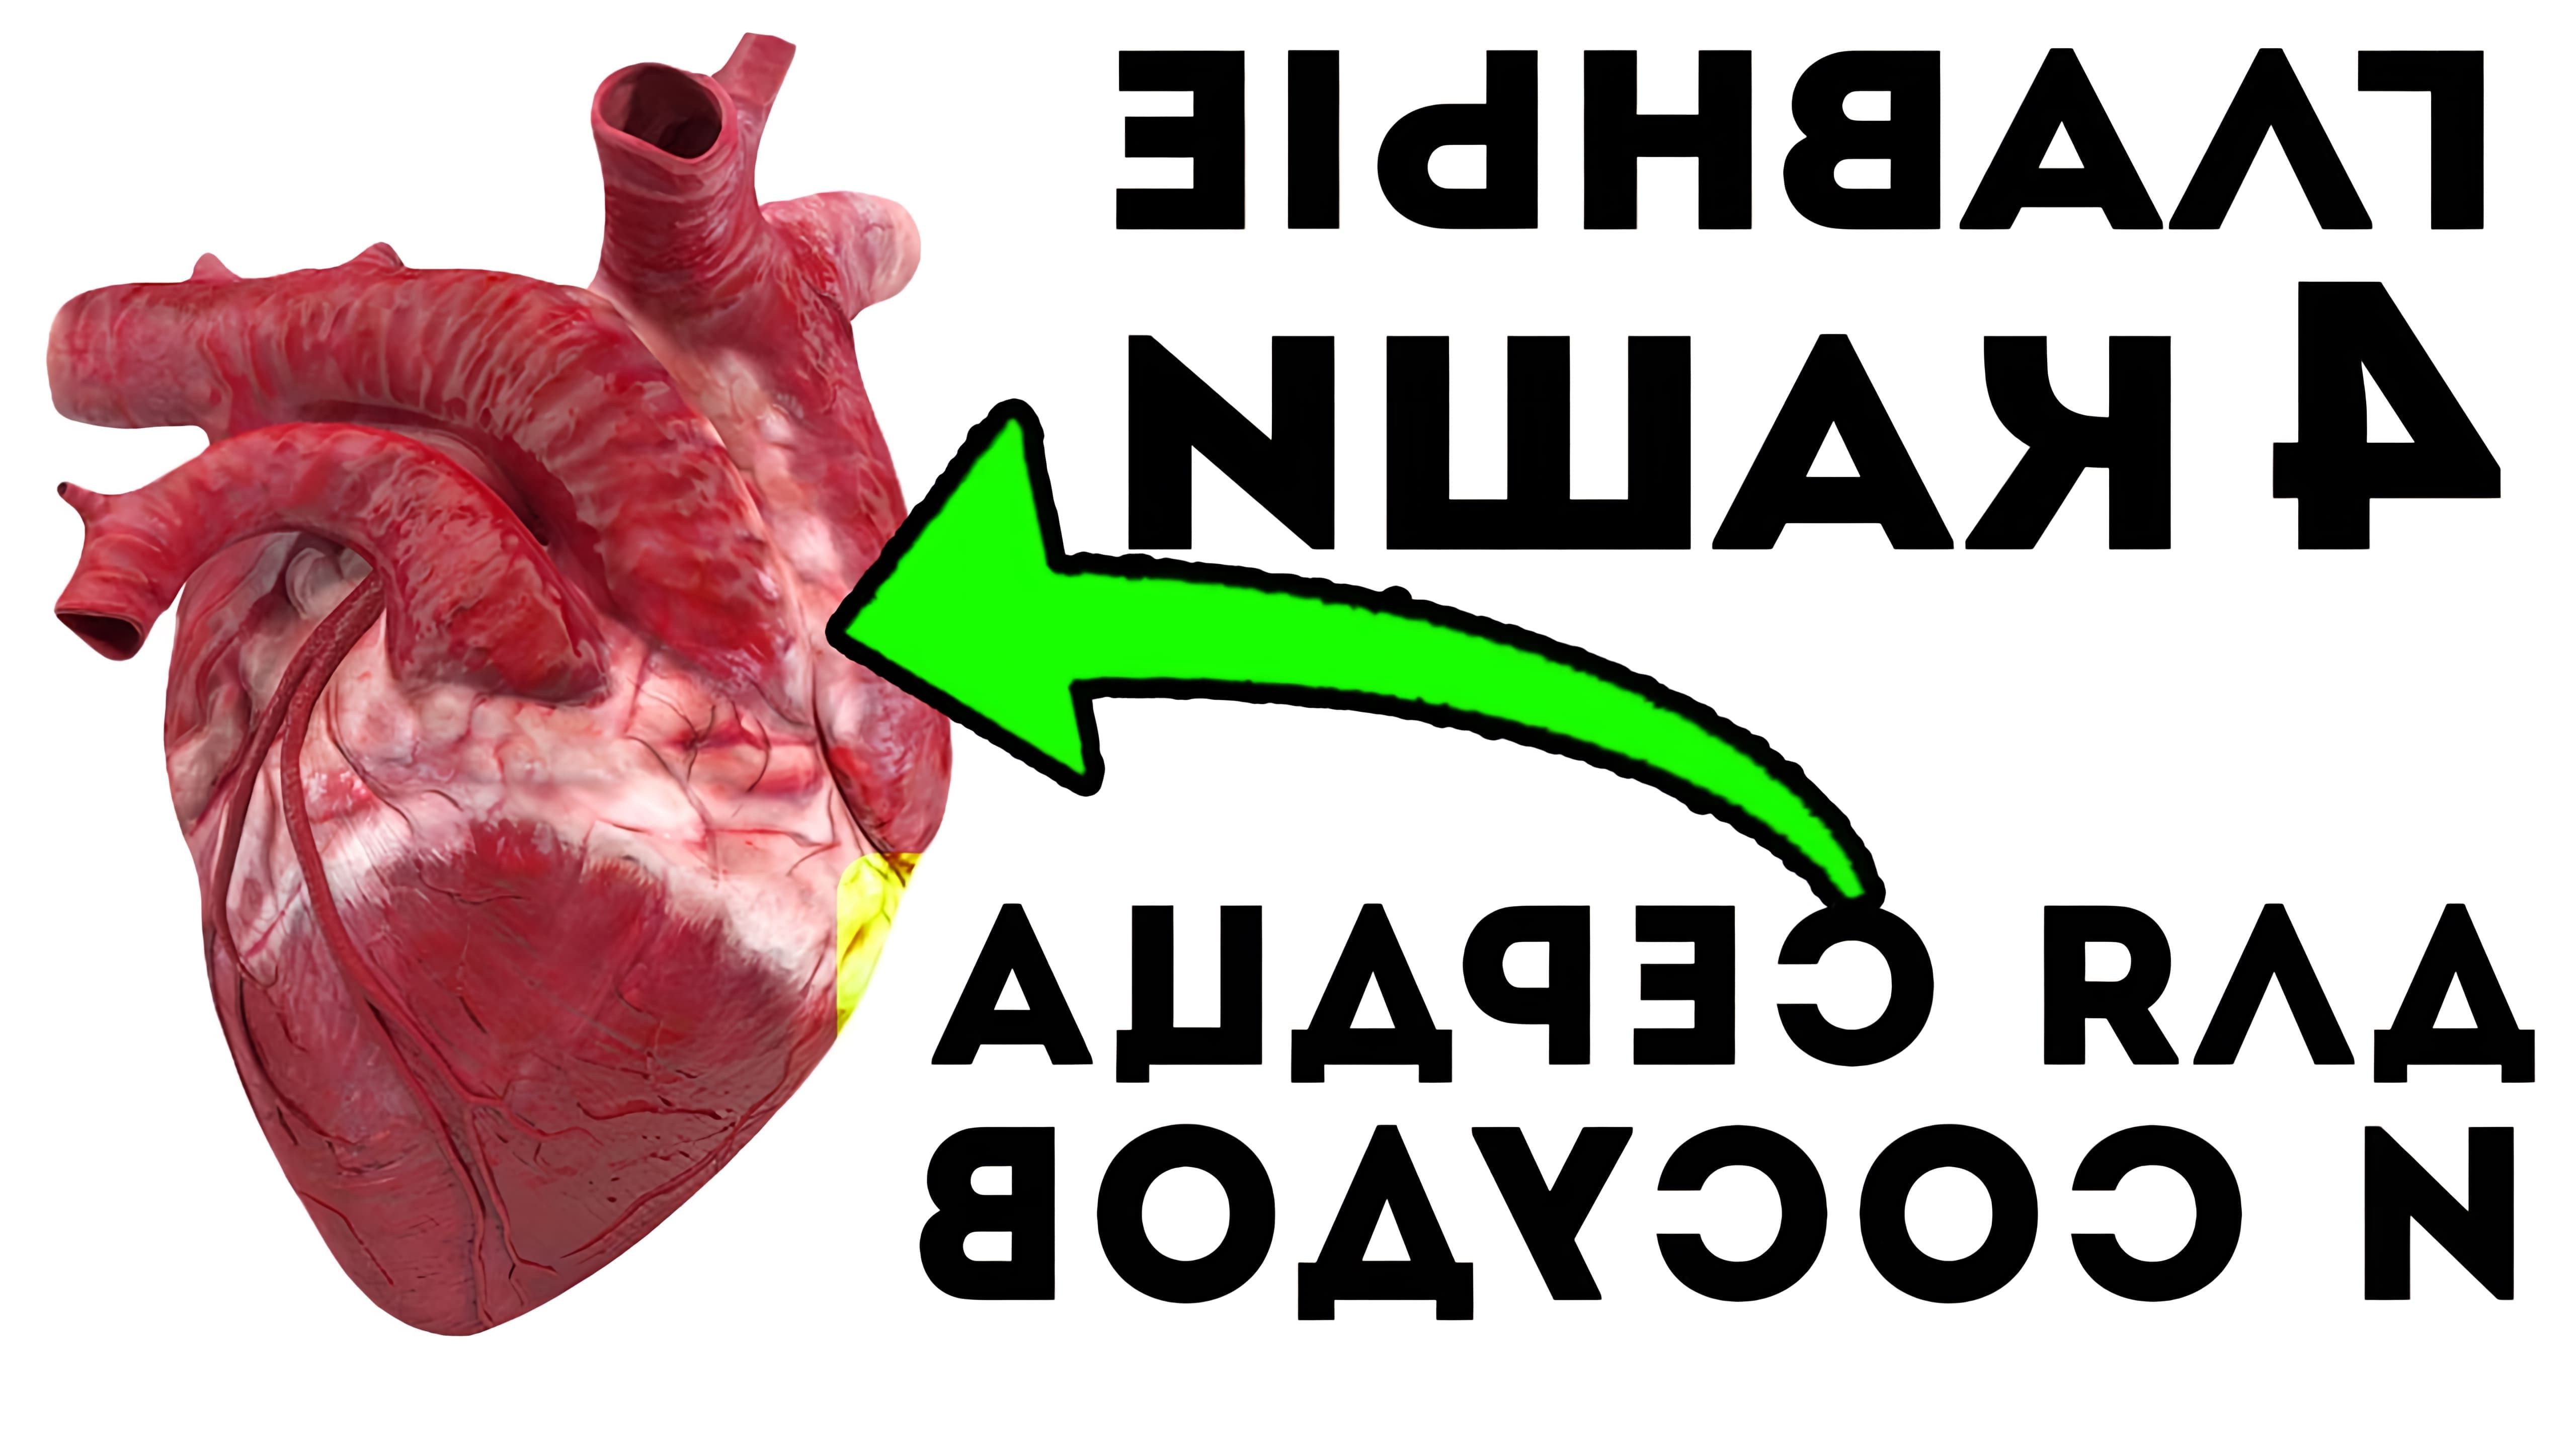 В этом видео рассказывается о том, как каши могут помочь улучшить состояние сердечно-сосудистой системы